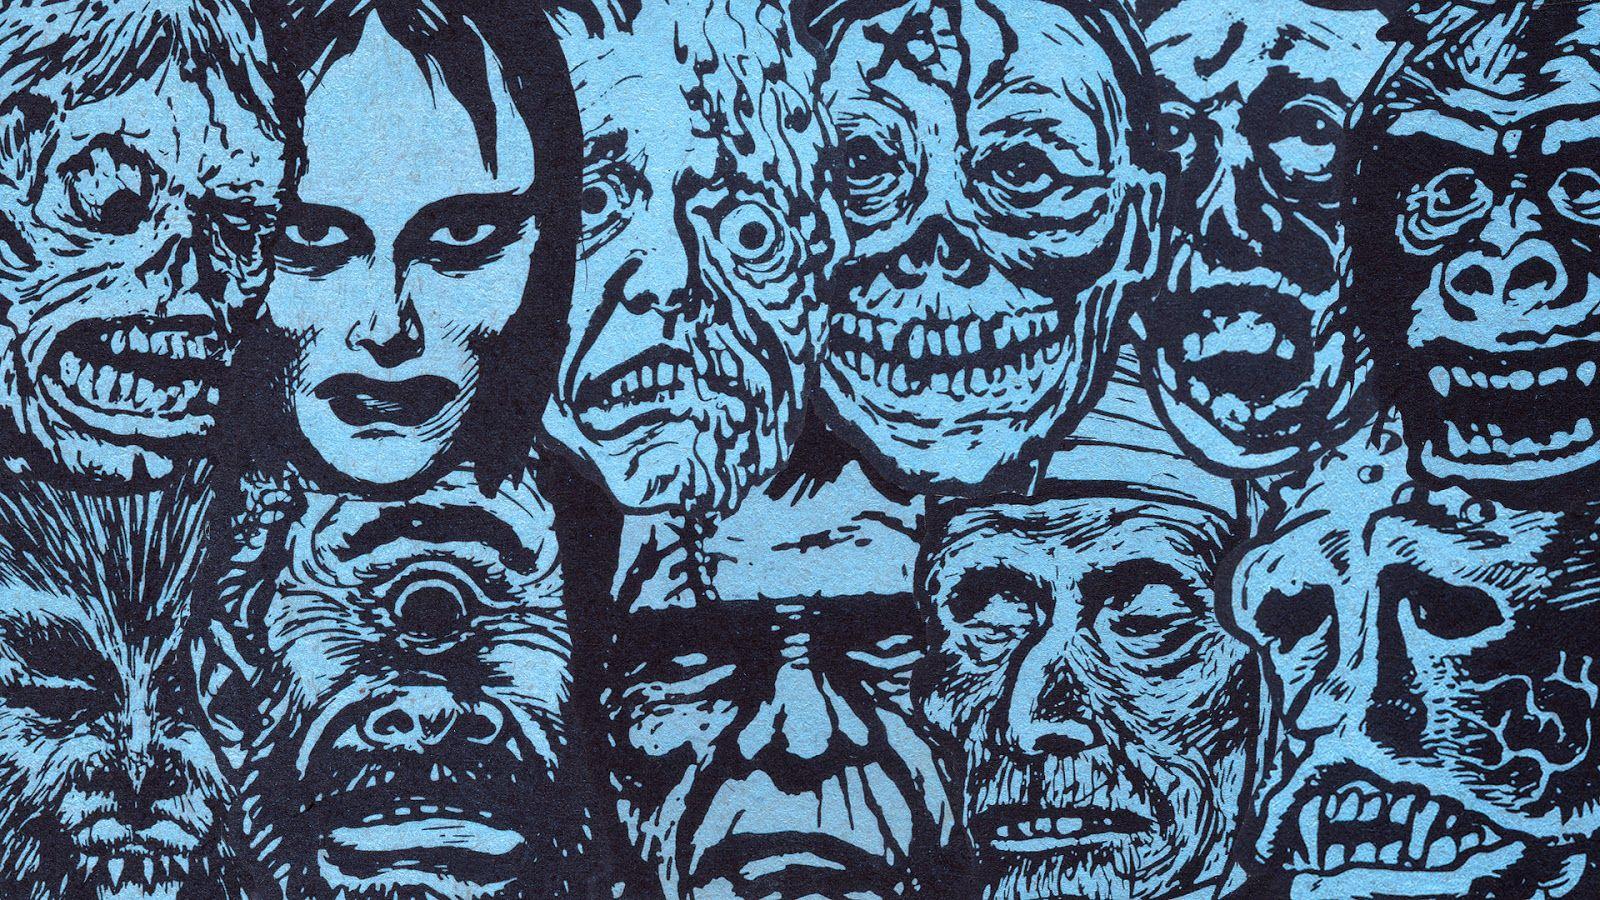 Topstone Wallpaper. Blood Curdling Blog of Monster Masks